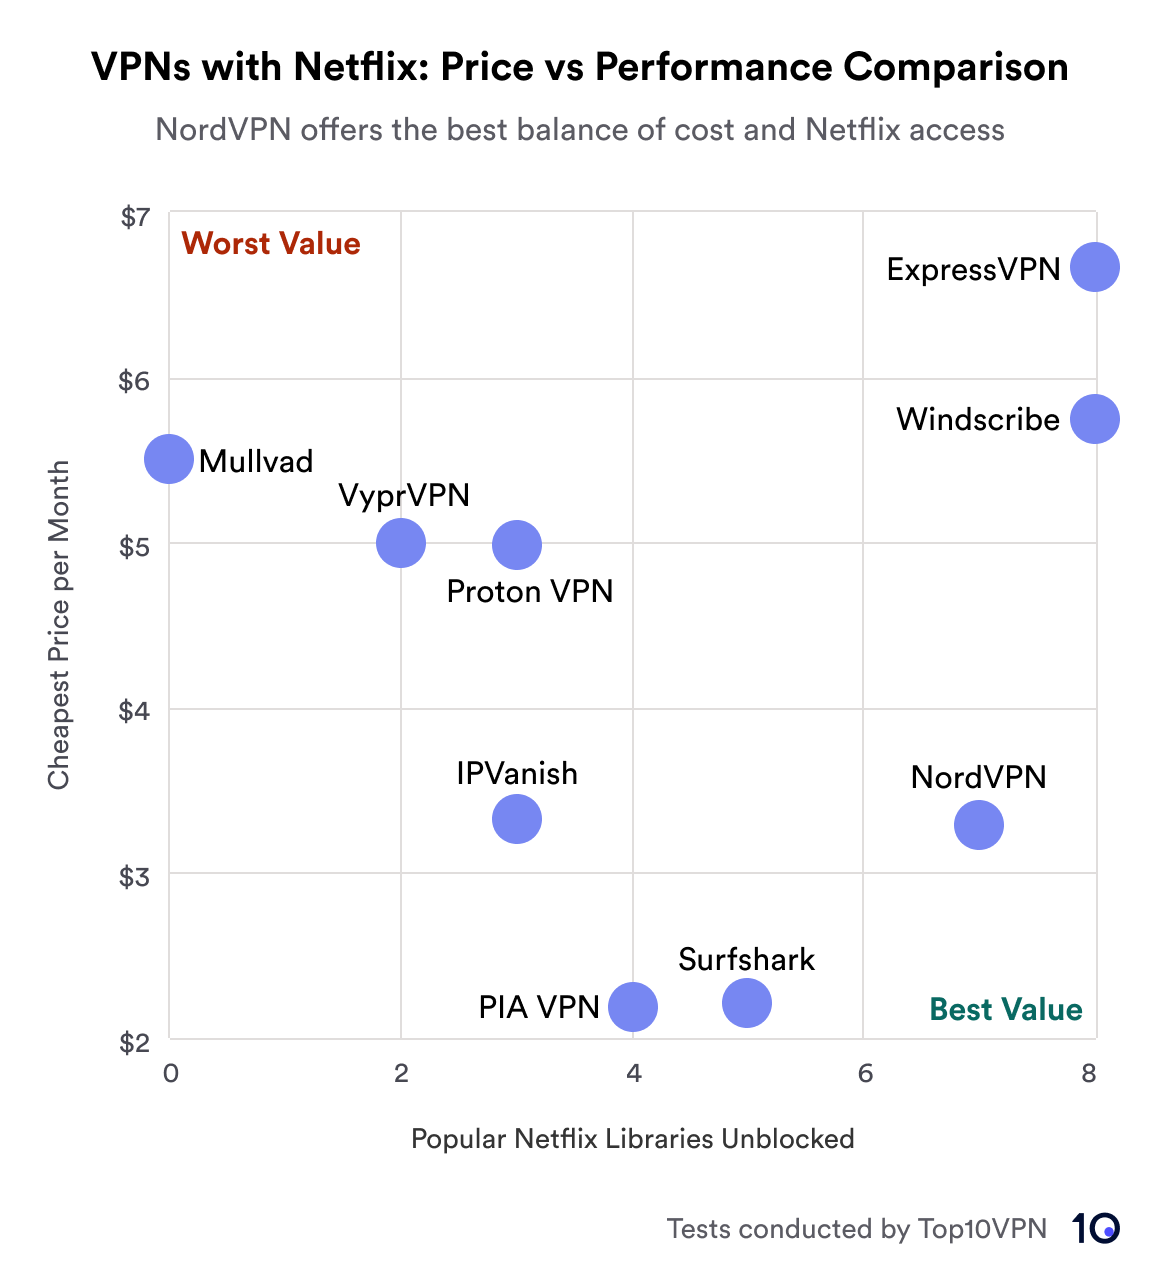 Netflix 라이브러리 차단을 해제할 때 가격 대비 성능을 기준으로 VPN 서비스를 비교한 산점도입니다. NordVPN은 최고의 가치를 제공하는 것으로 강조되어 있으며 